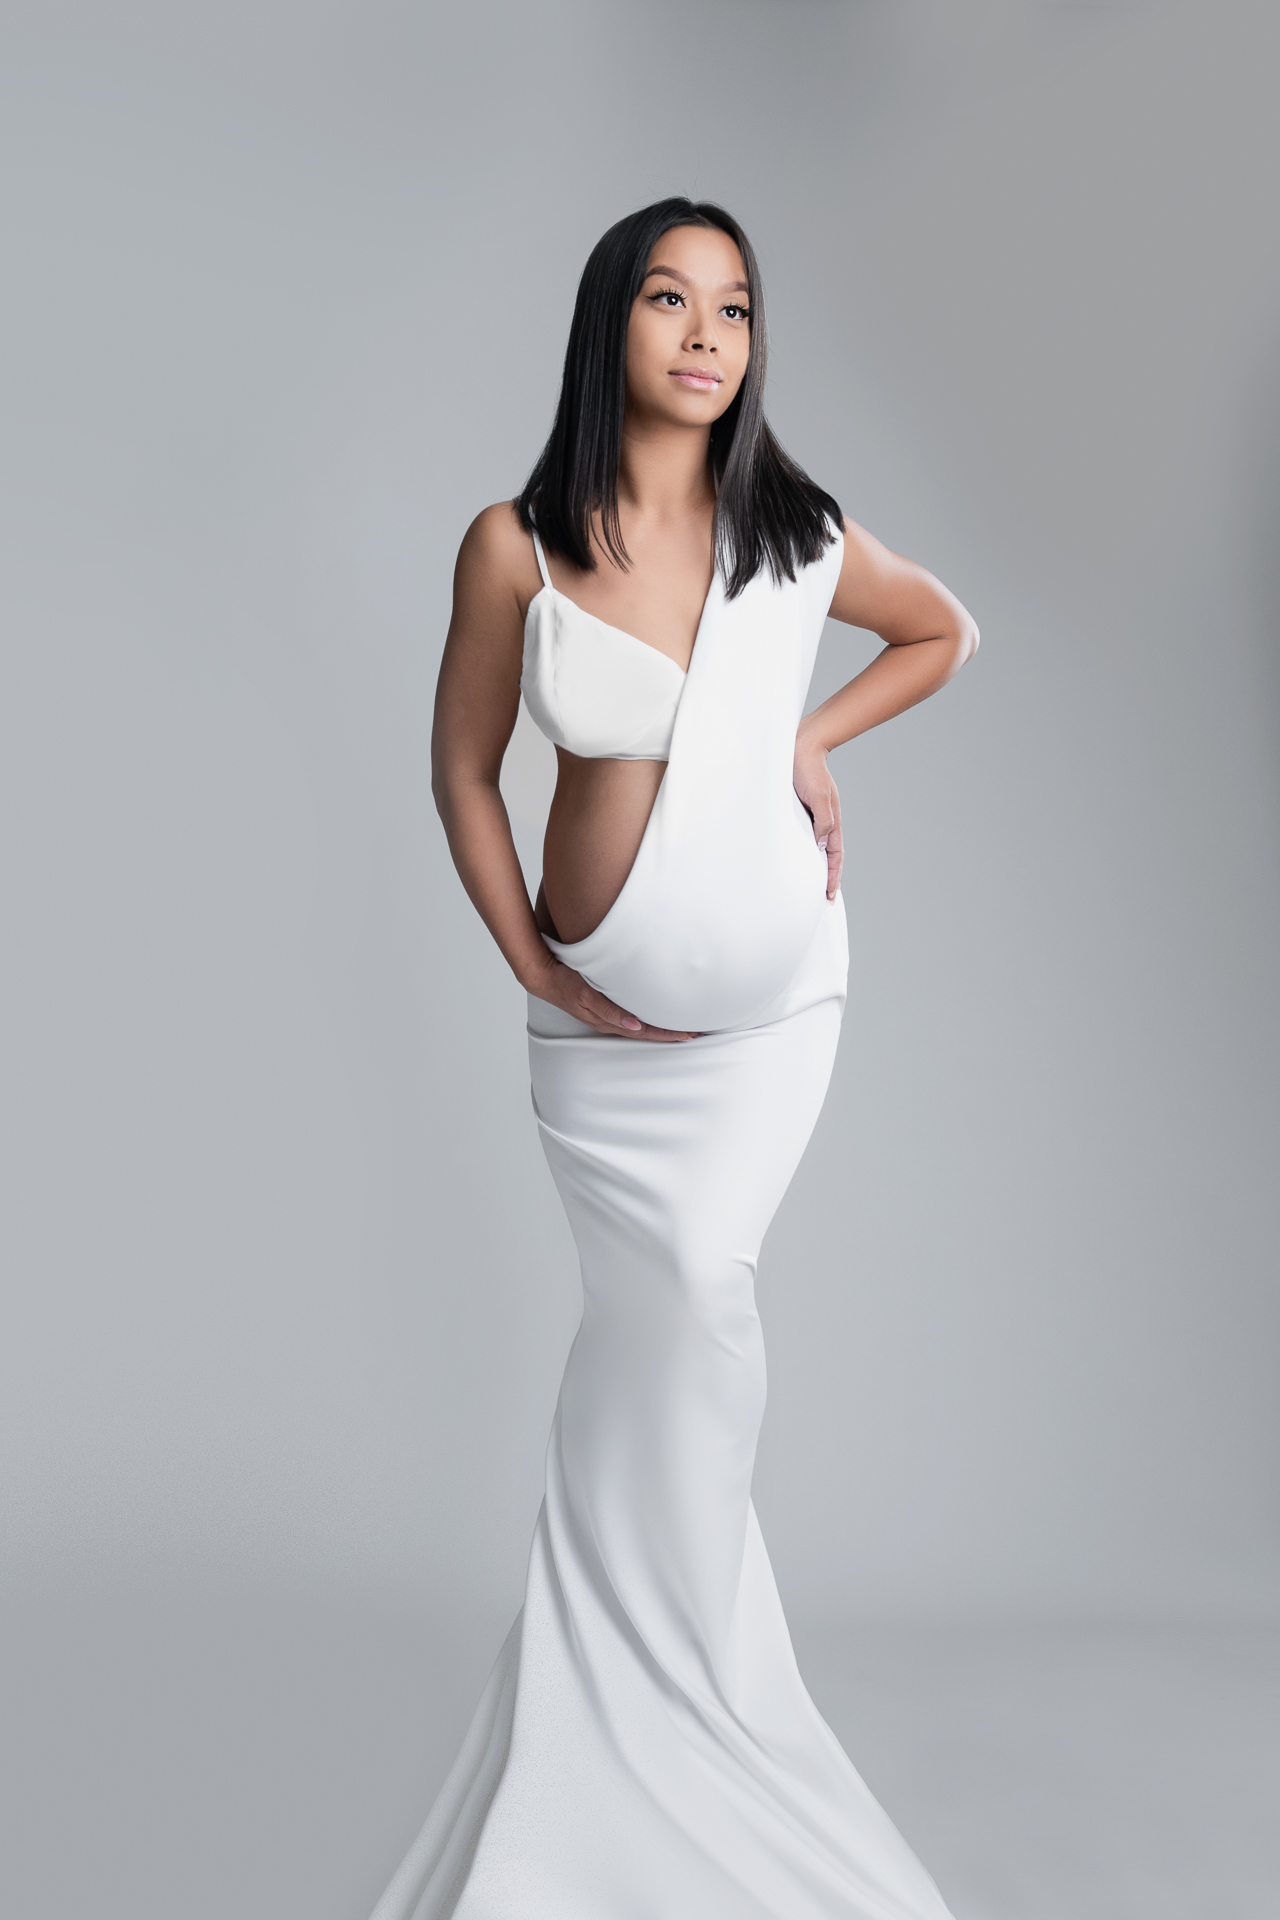 Pregnant woman wearing white dress posing on white backdrop